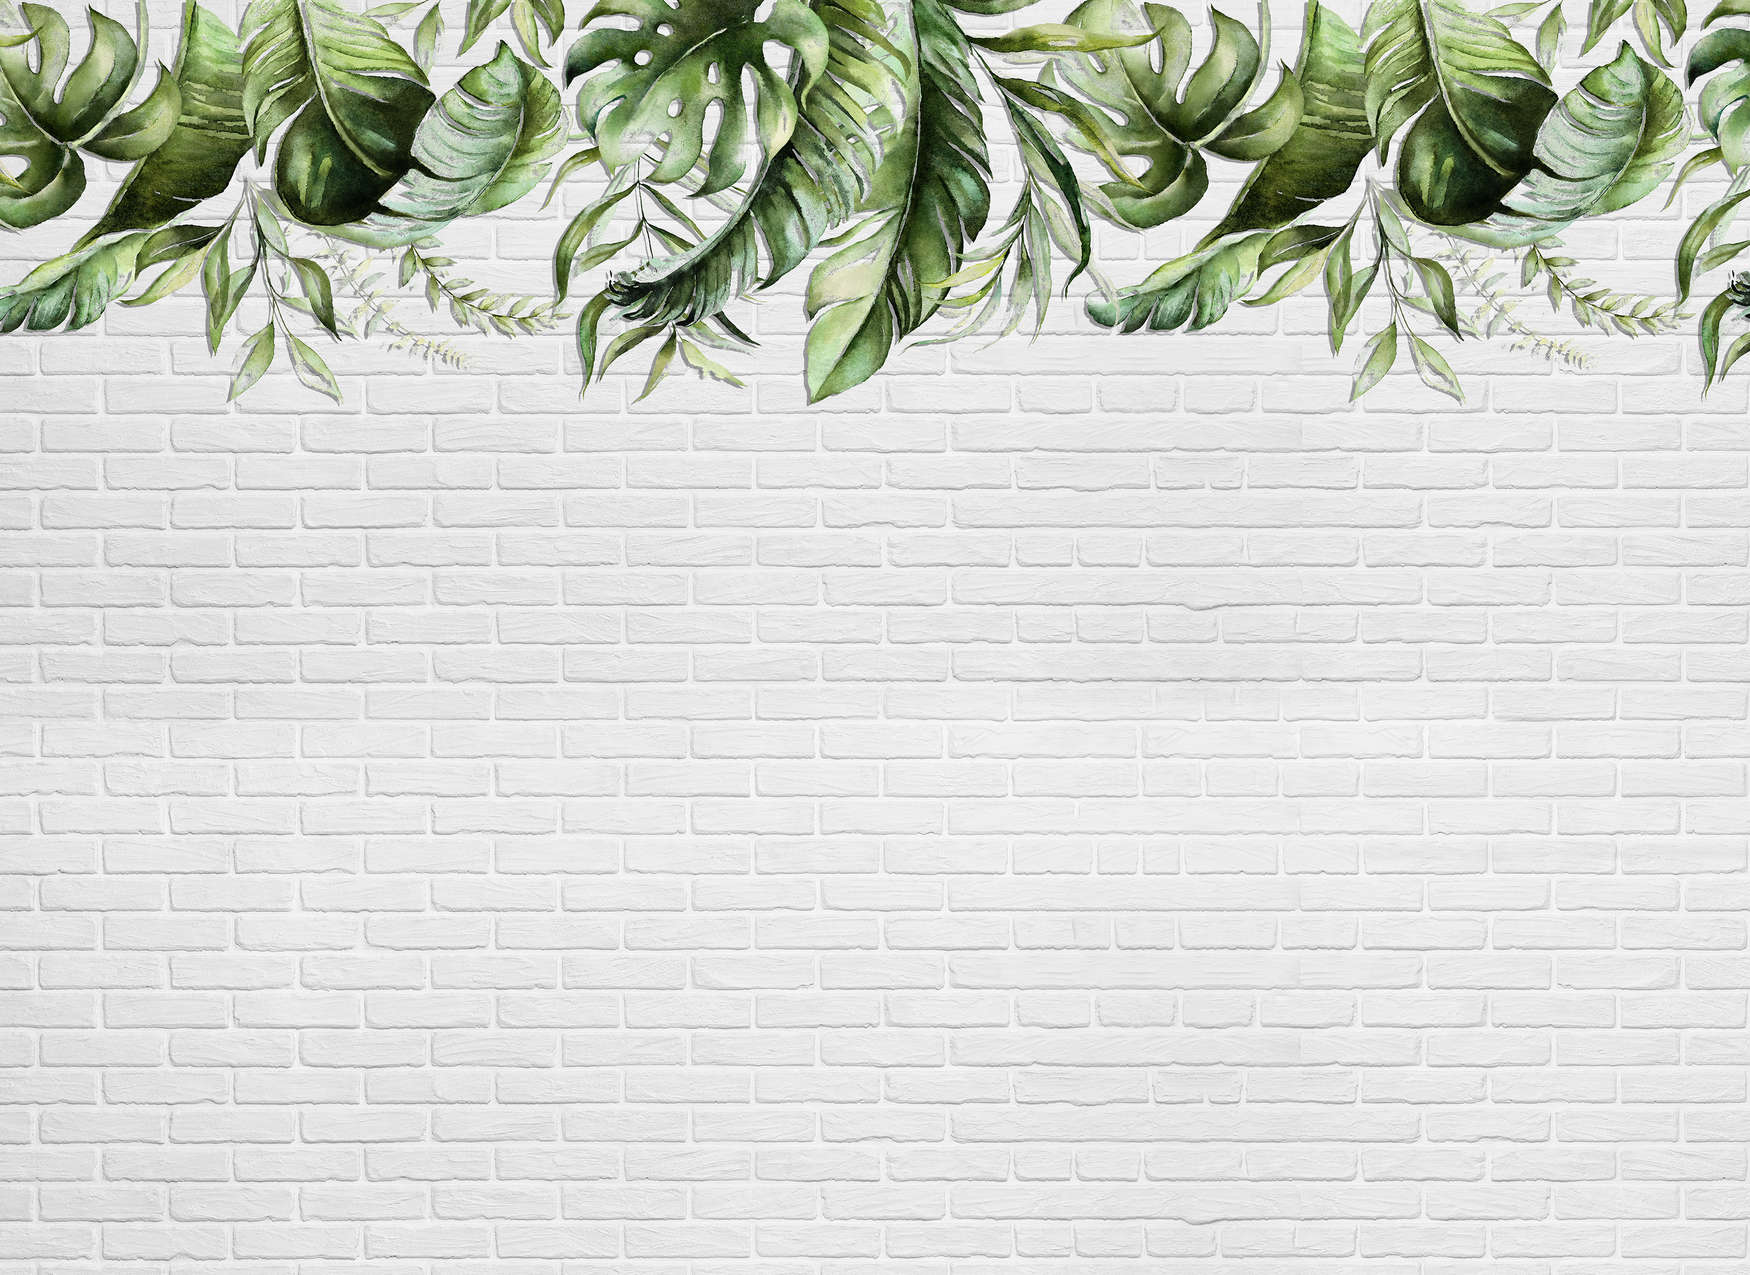             Fototapete mit kleinen Blätterranken auf einer Steinwand – Grün, Weiß
        